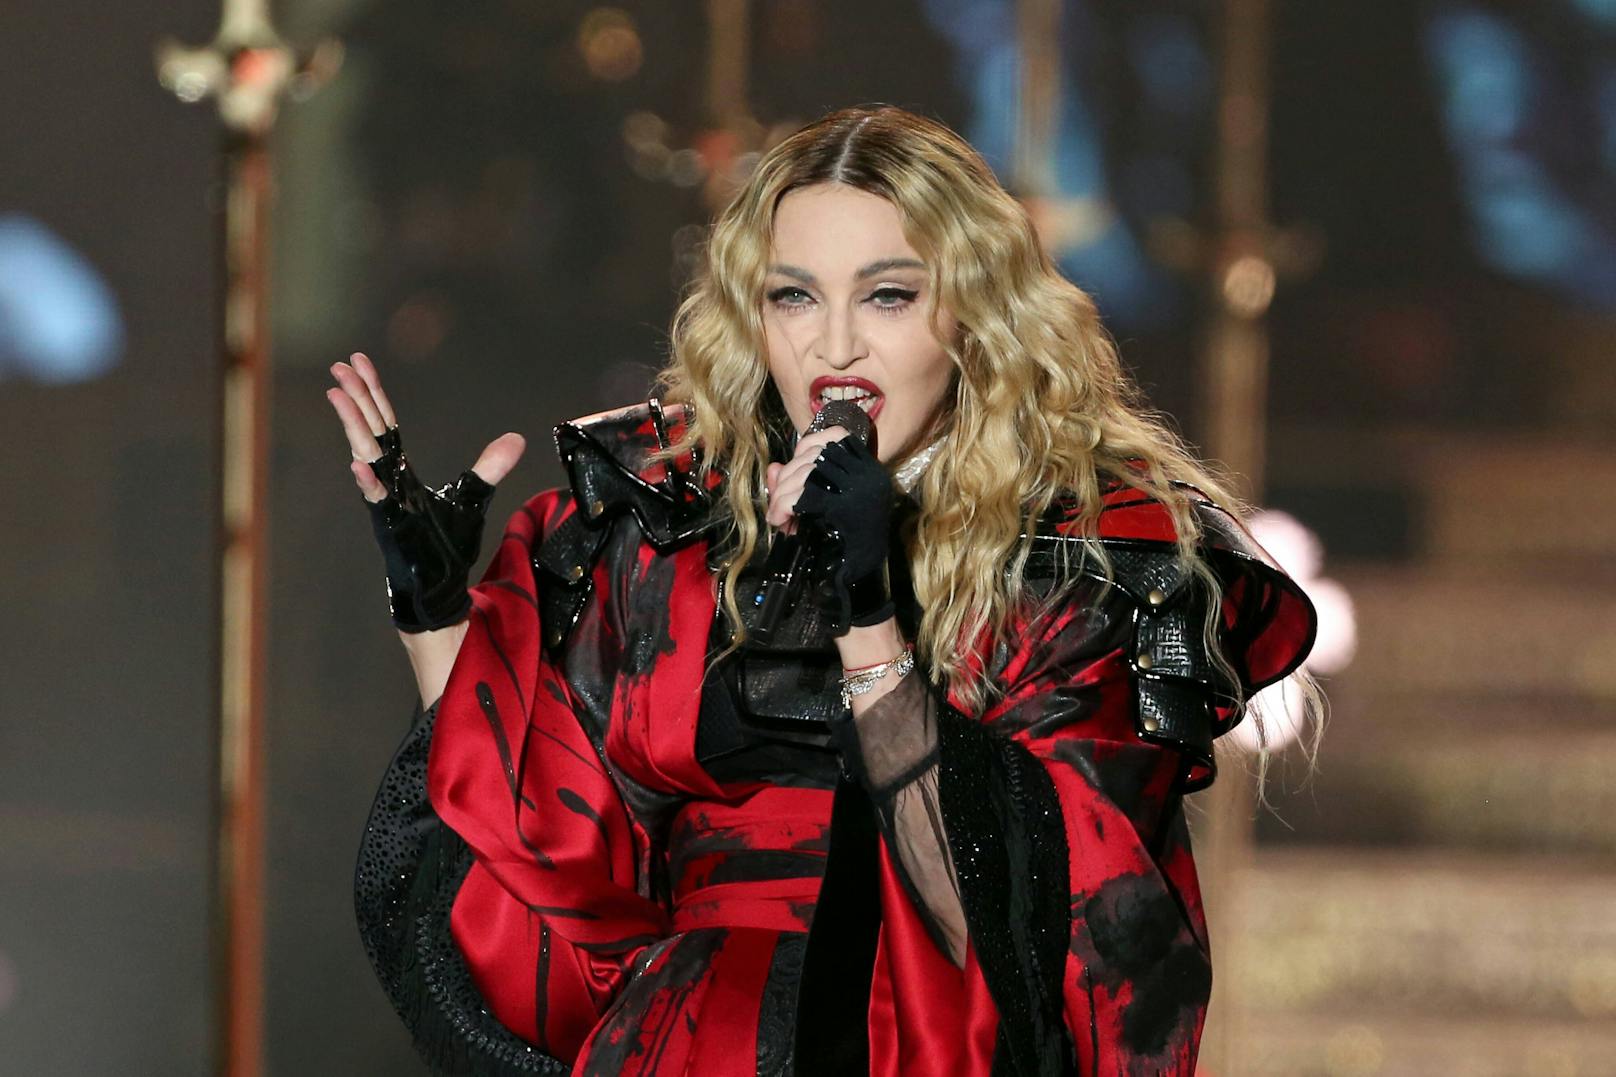 Bei Sternzeichen hört sich der Spaß auf: Pop-Star <strong>Madonna</strong> ließ ihren Musikdeal mit DJ David Guetta platzen.